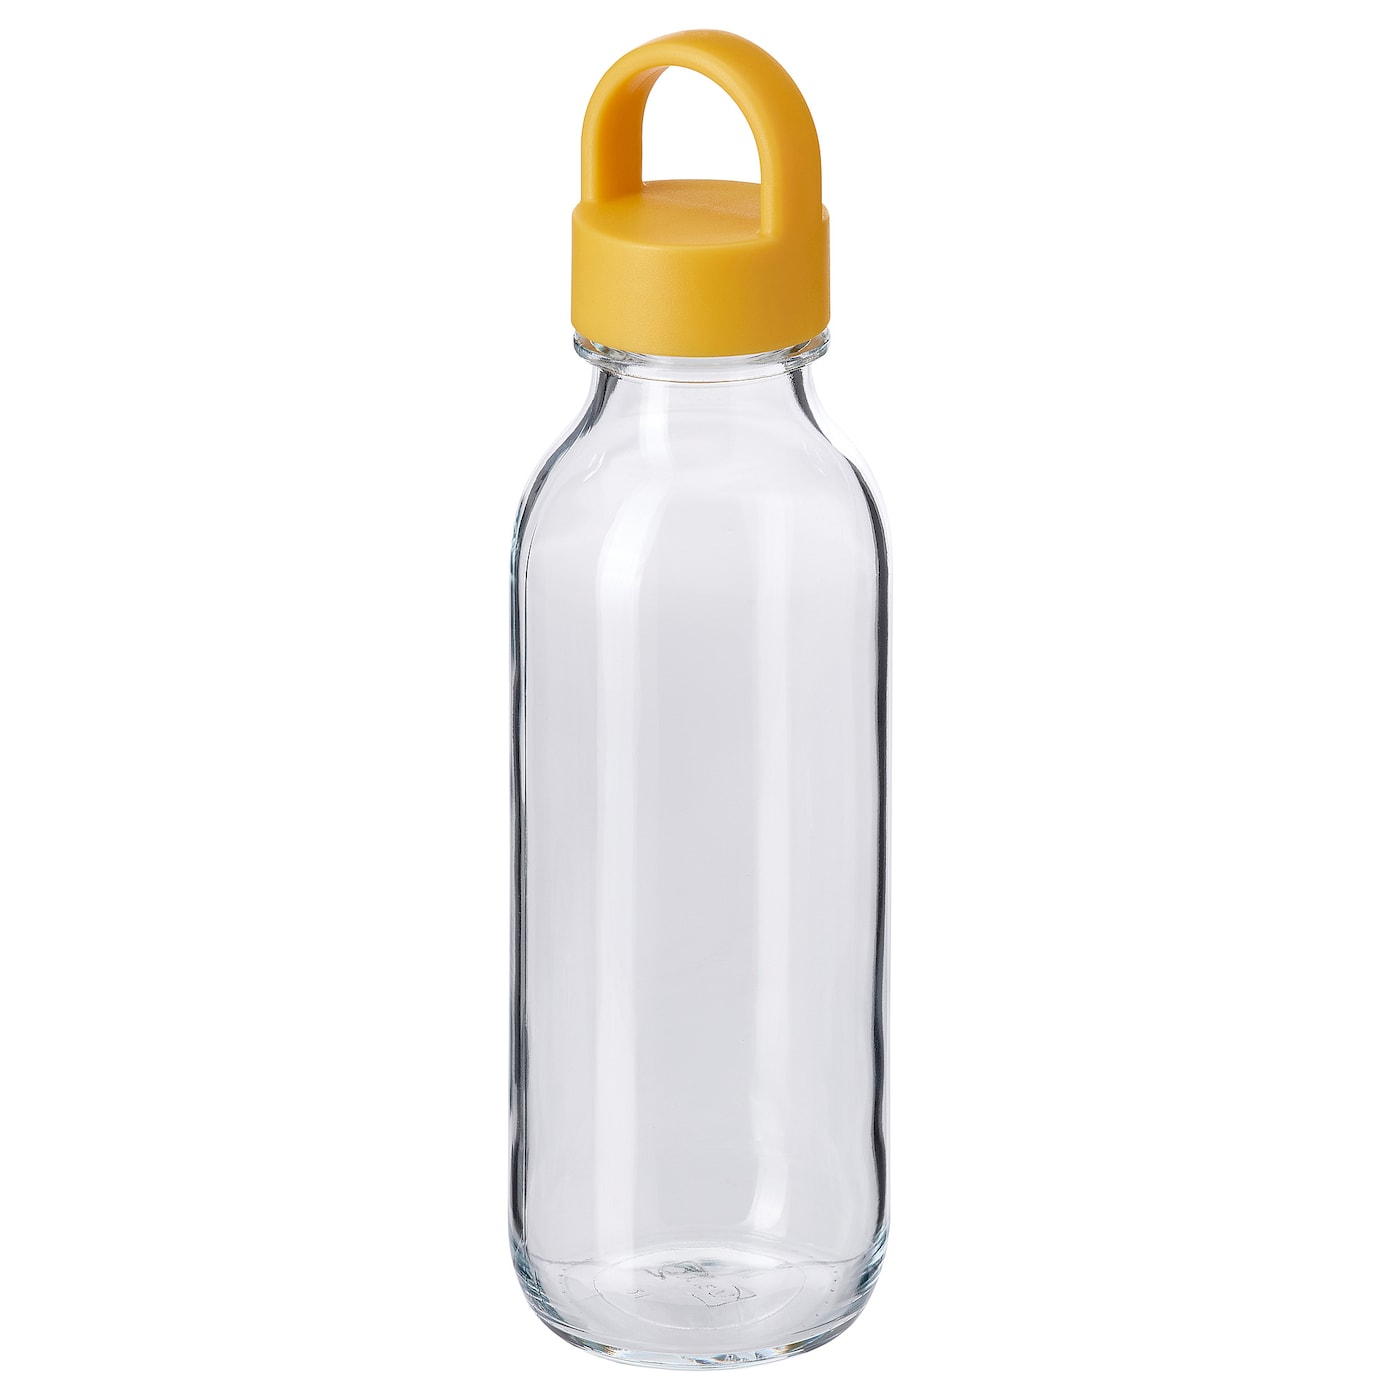 Бутылка с крышкой - IKEA FORMSKÖN/FORMSKON, 0.5 л, стекло/желтый, ФОРМСКЁН ИКЕА